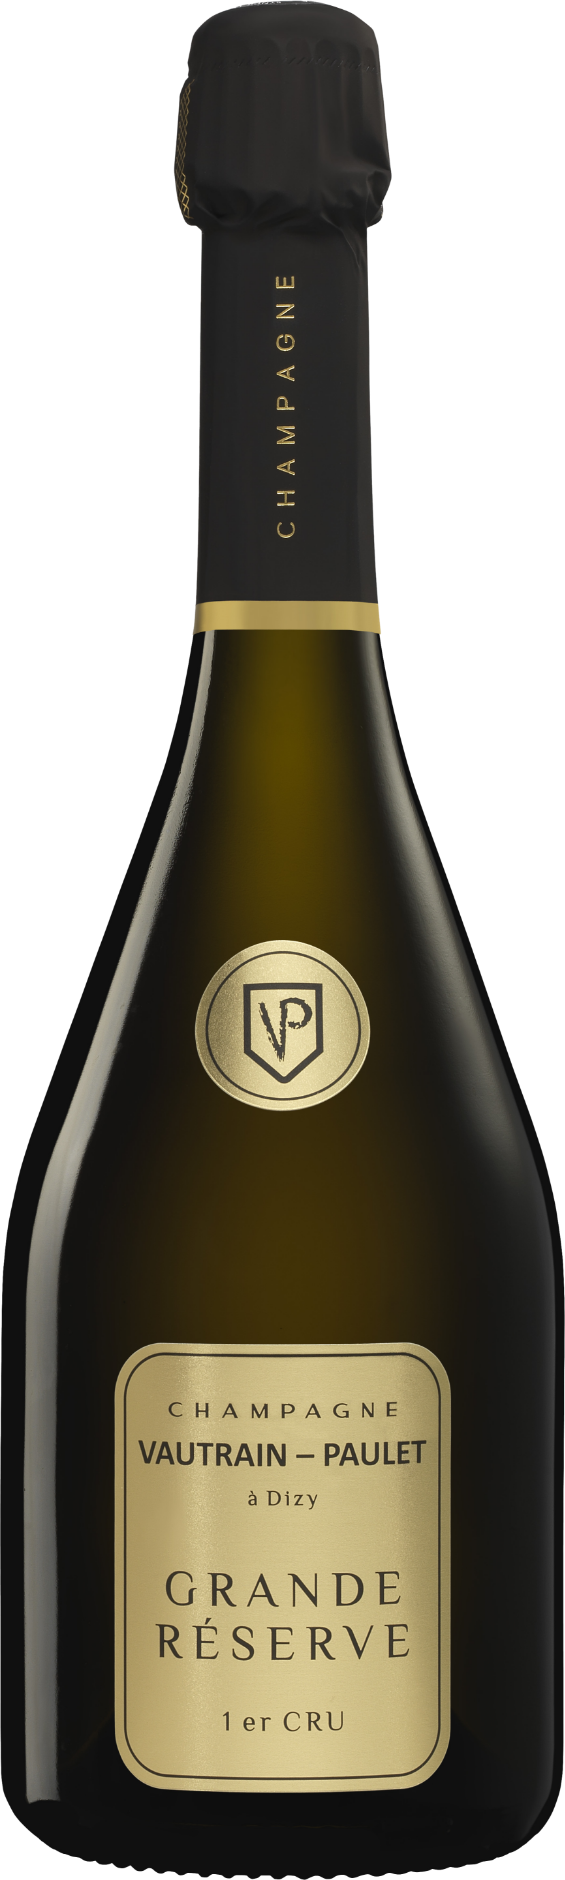 Grande Réserve Champagne Vautrain-Paulet